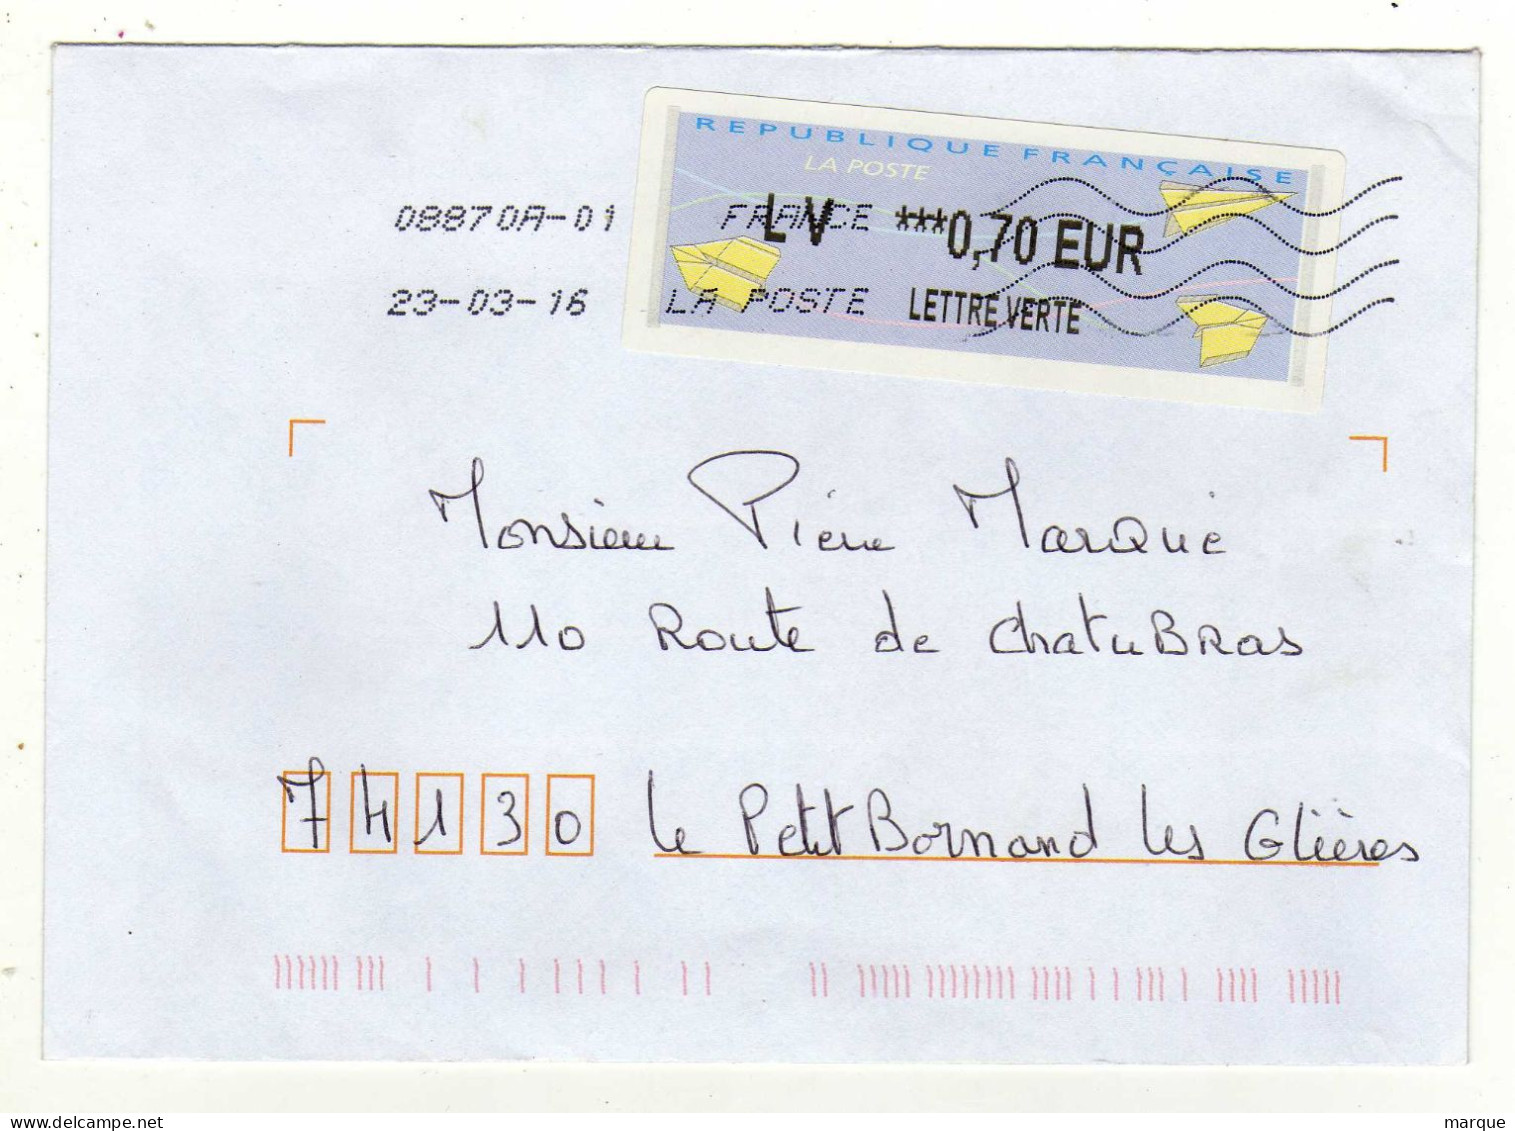 Enveloppe FRANCE Avec Vignette Affranchissement Lettre Verte Oblitération LA POSTE 08870A-01 23/03/2016 - 2000 Type « Avions En Papier »